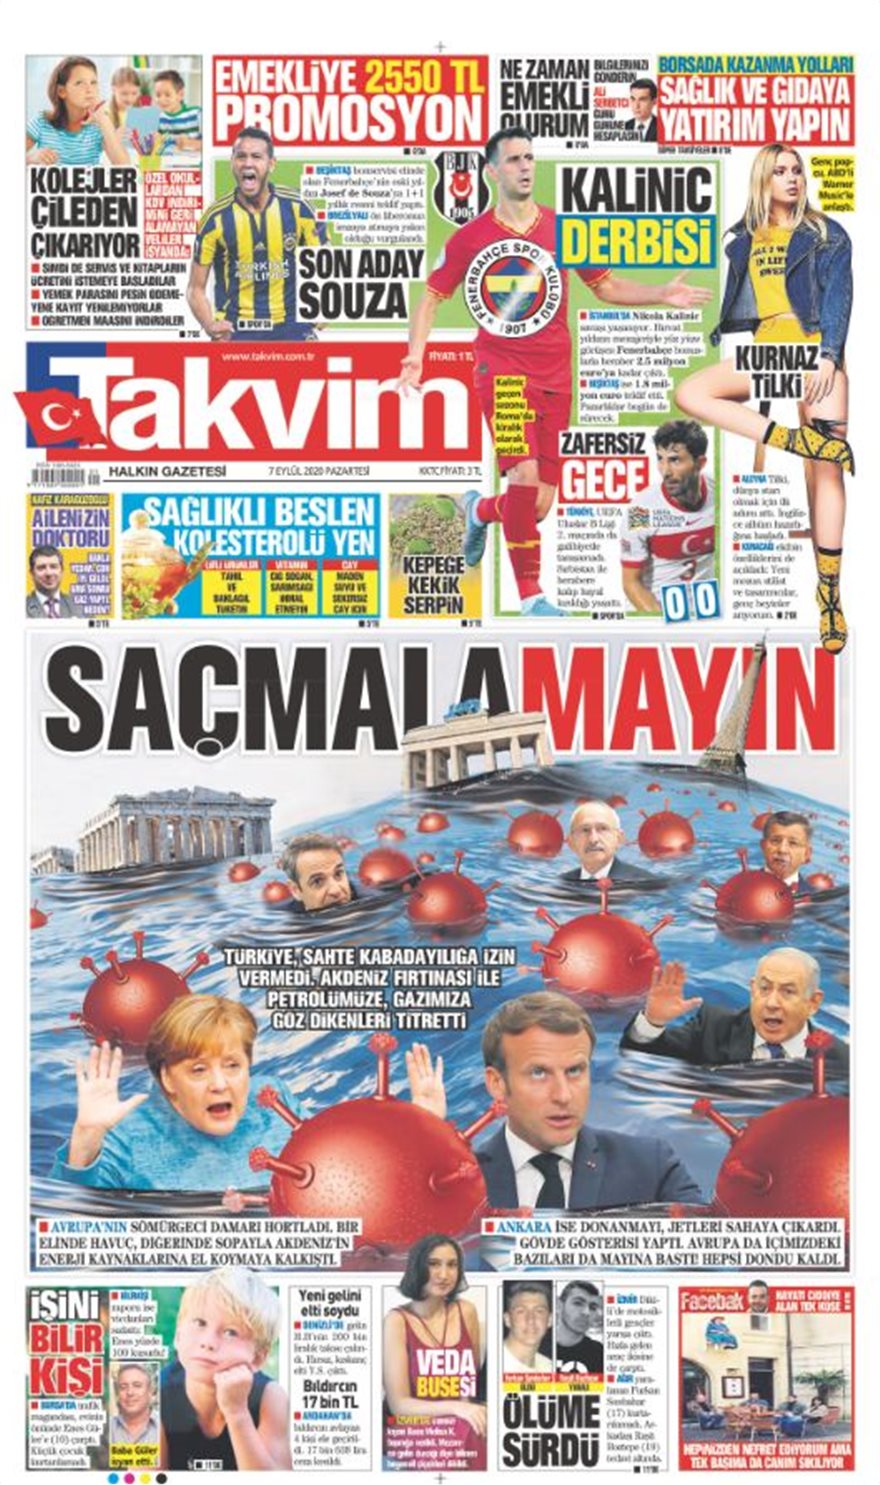 Τουρκική εφημερίδα παρουσιάζει Μητσοτάκη, Μακρόν, Μέρκελ ως … «ναυαγούς» στη Μεσόγειο - Φωτογραφία 1